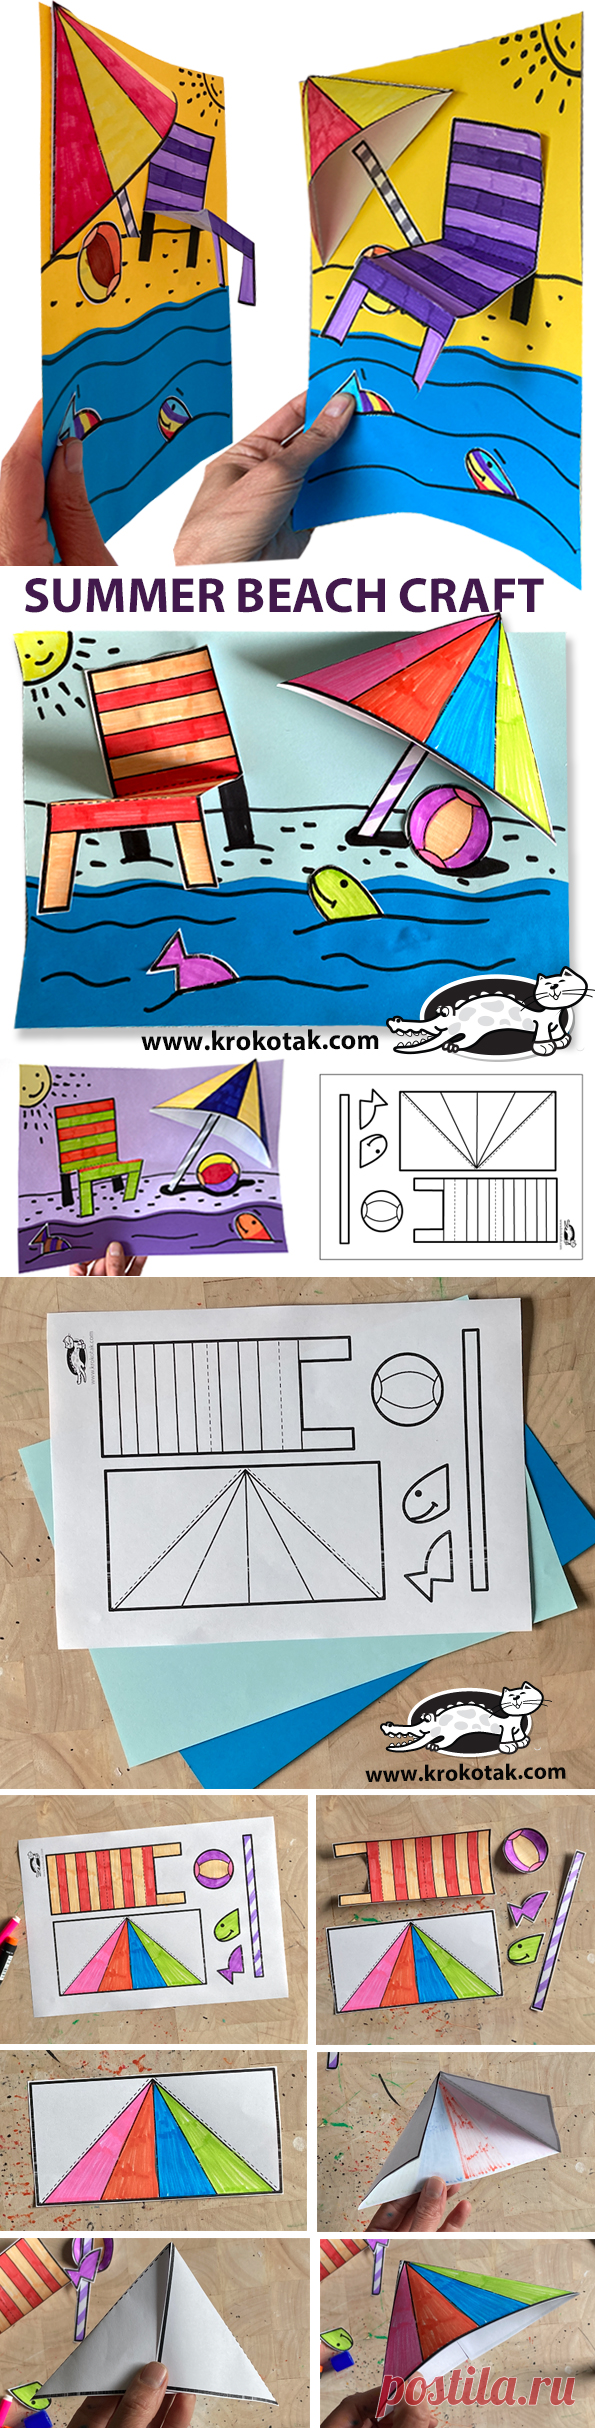 krokotak | SUMMER BEACH CRAFT